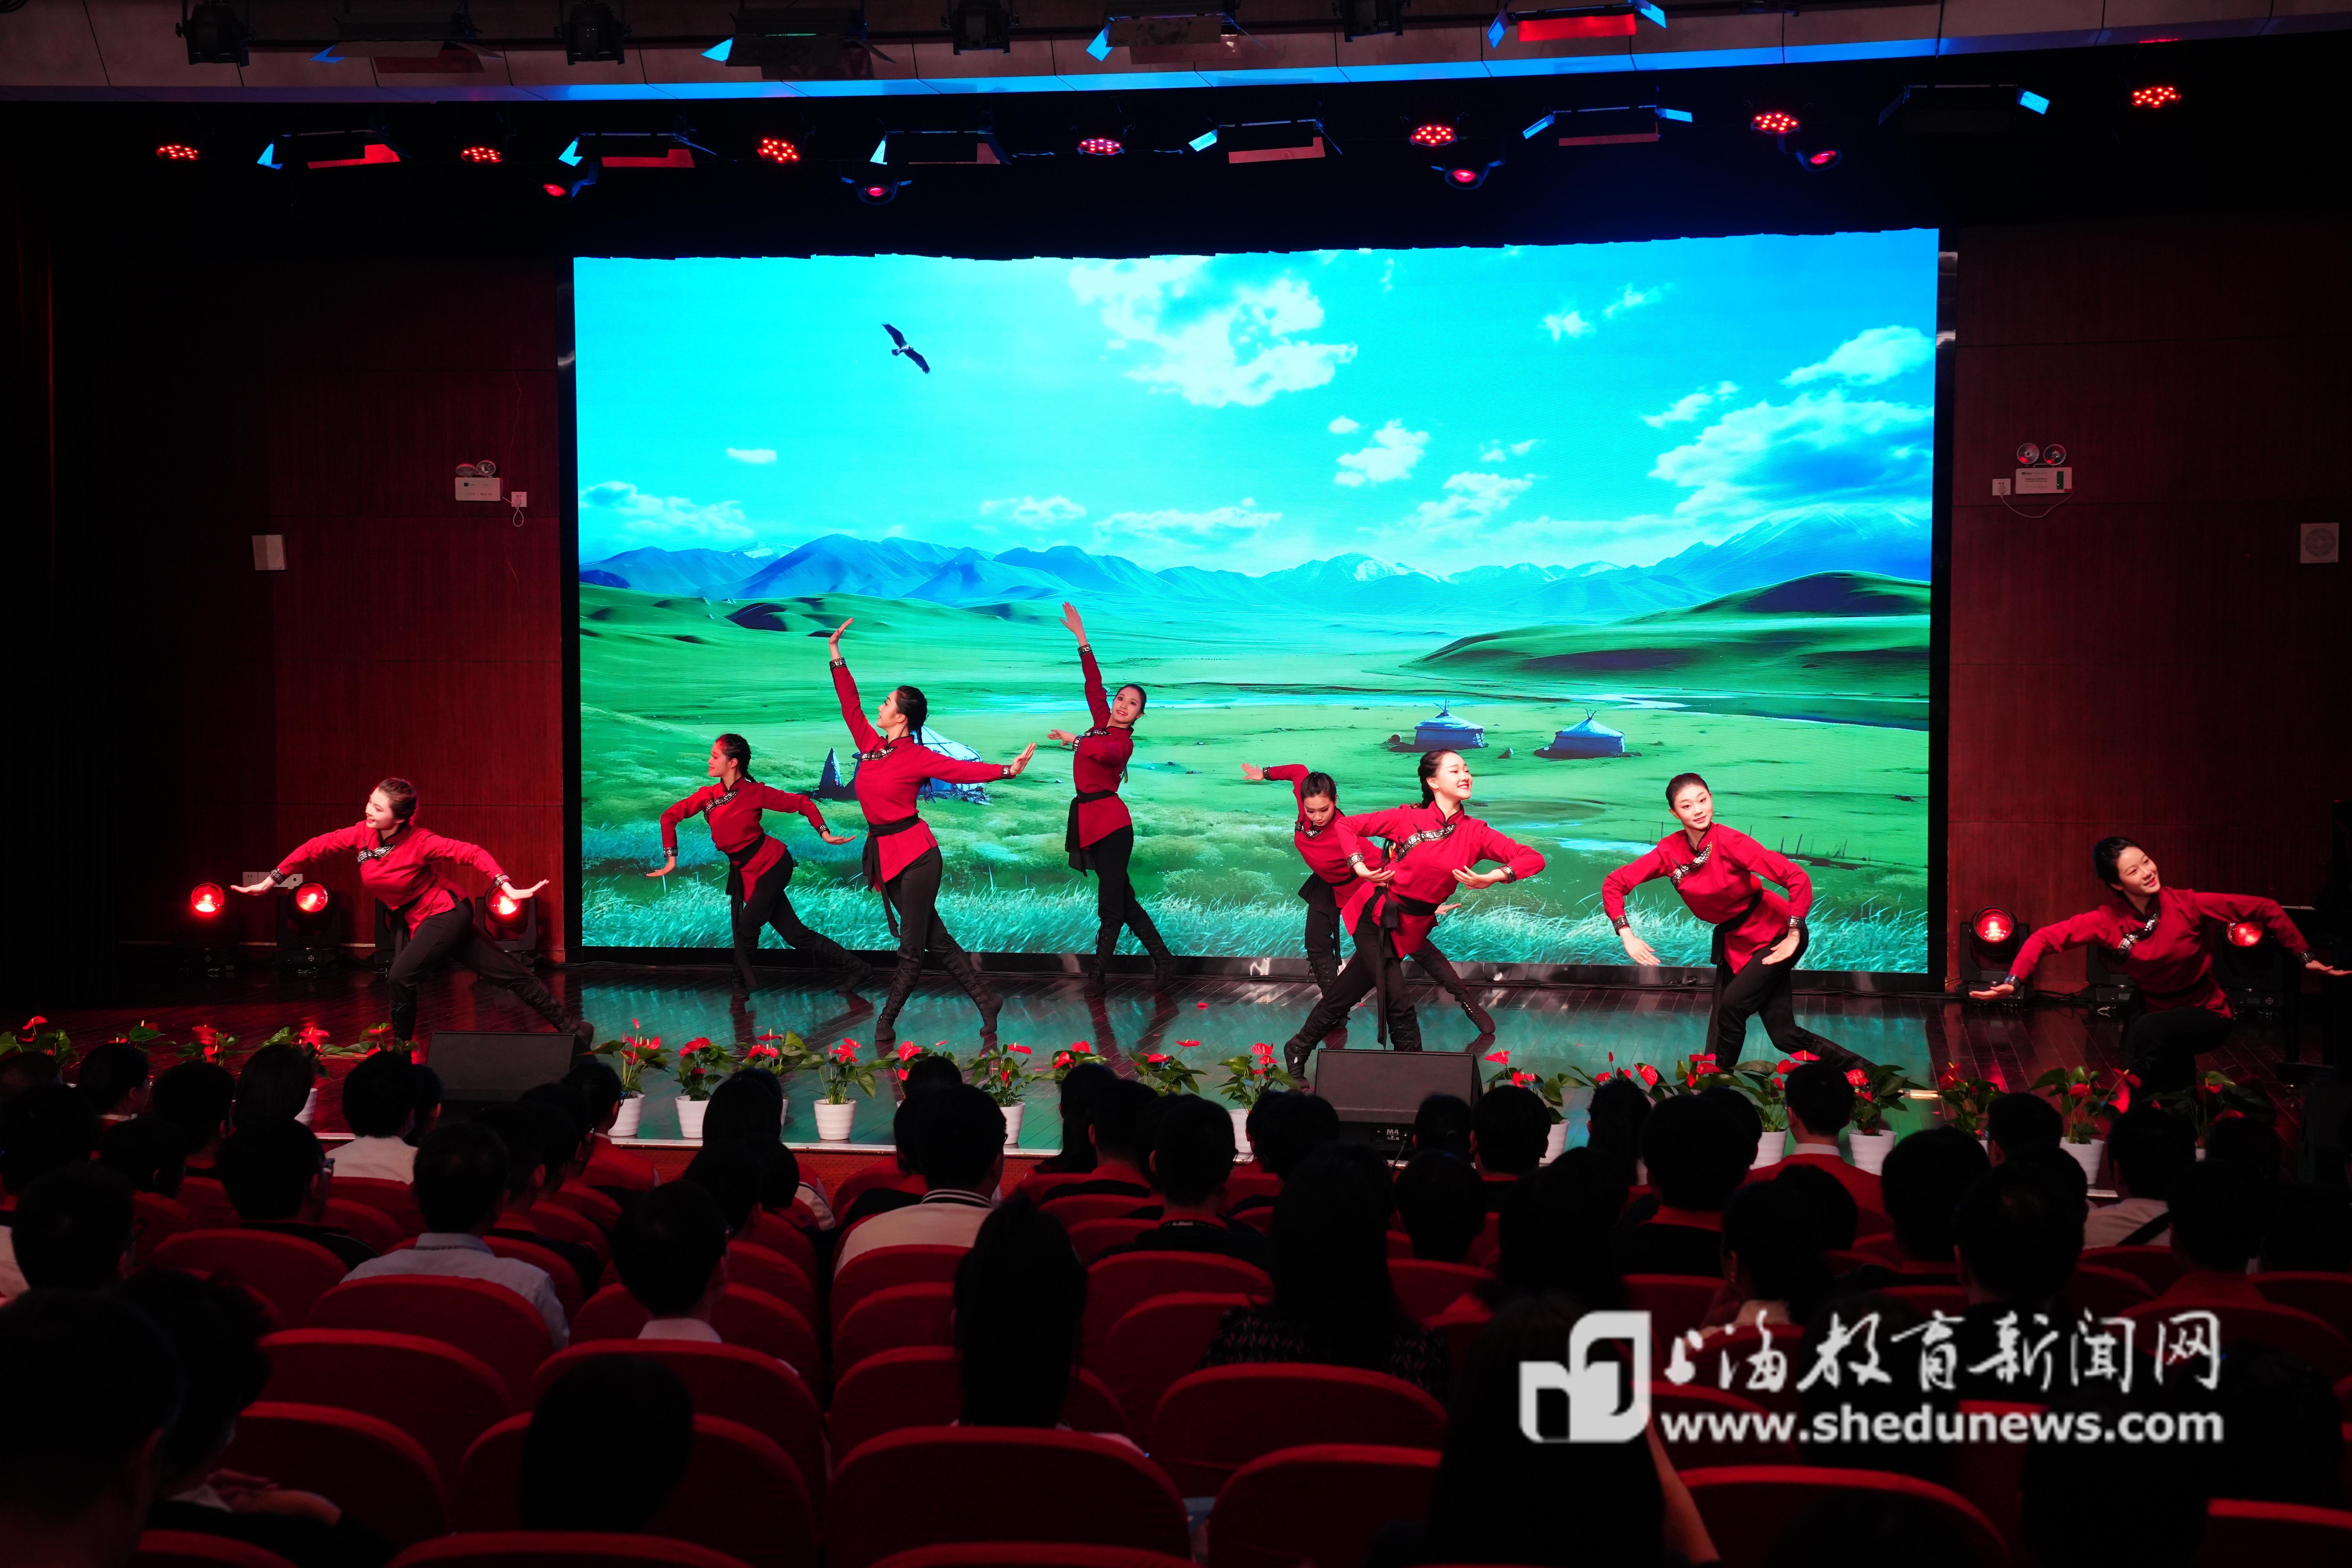 上海中职学生星光舞蹈团表演蒙古族舞蹈《草原漫漫》.jpg